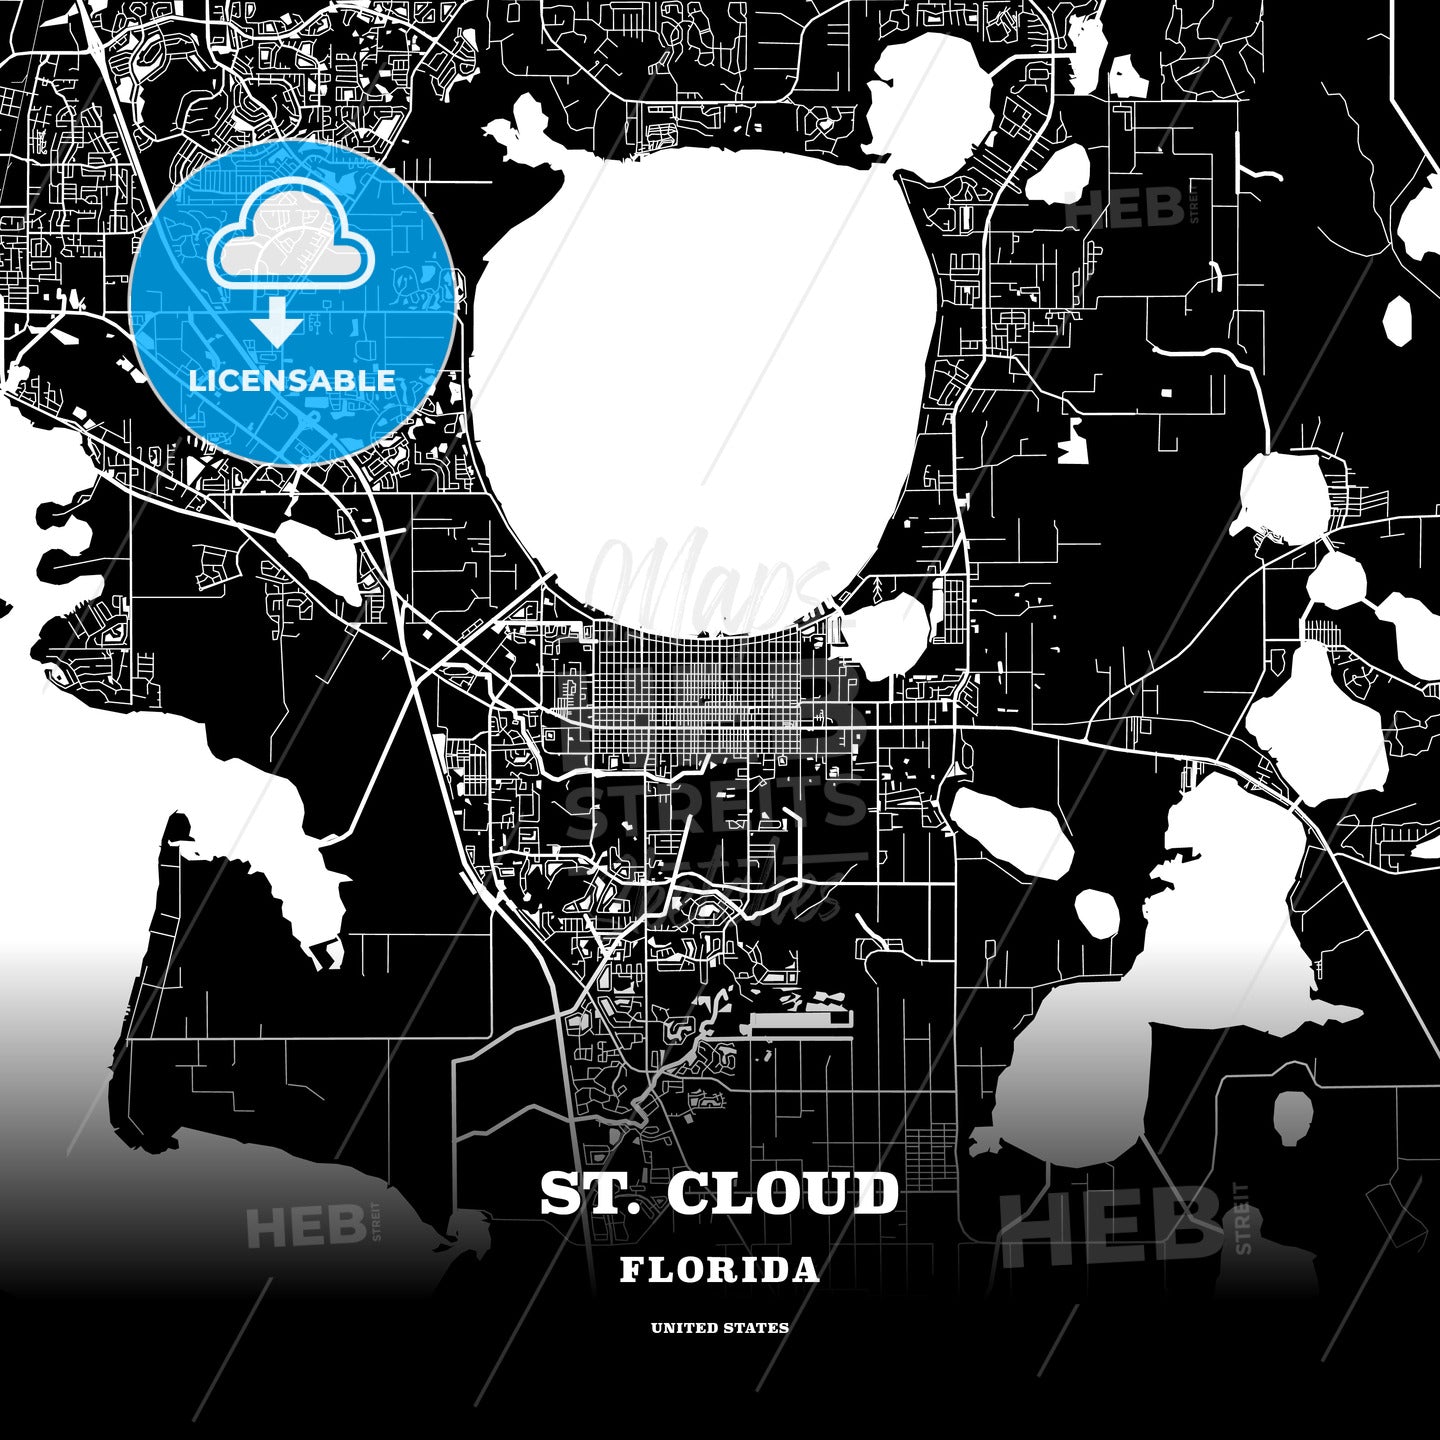 St. Cloud, Florida, USA map